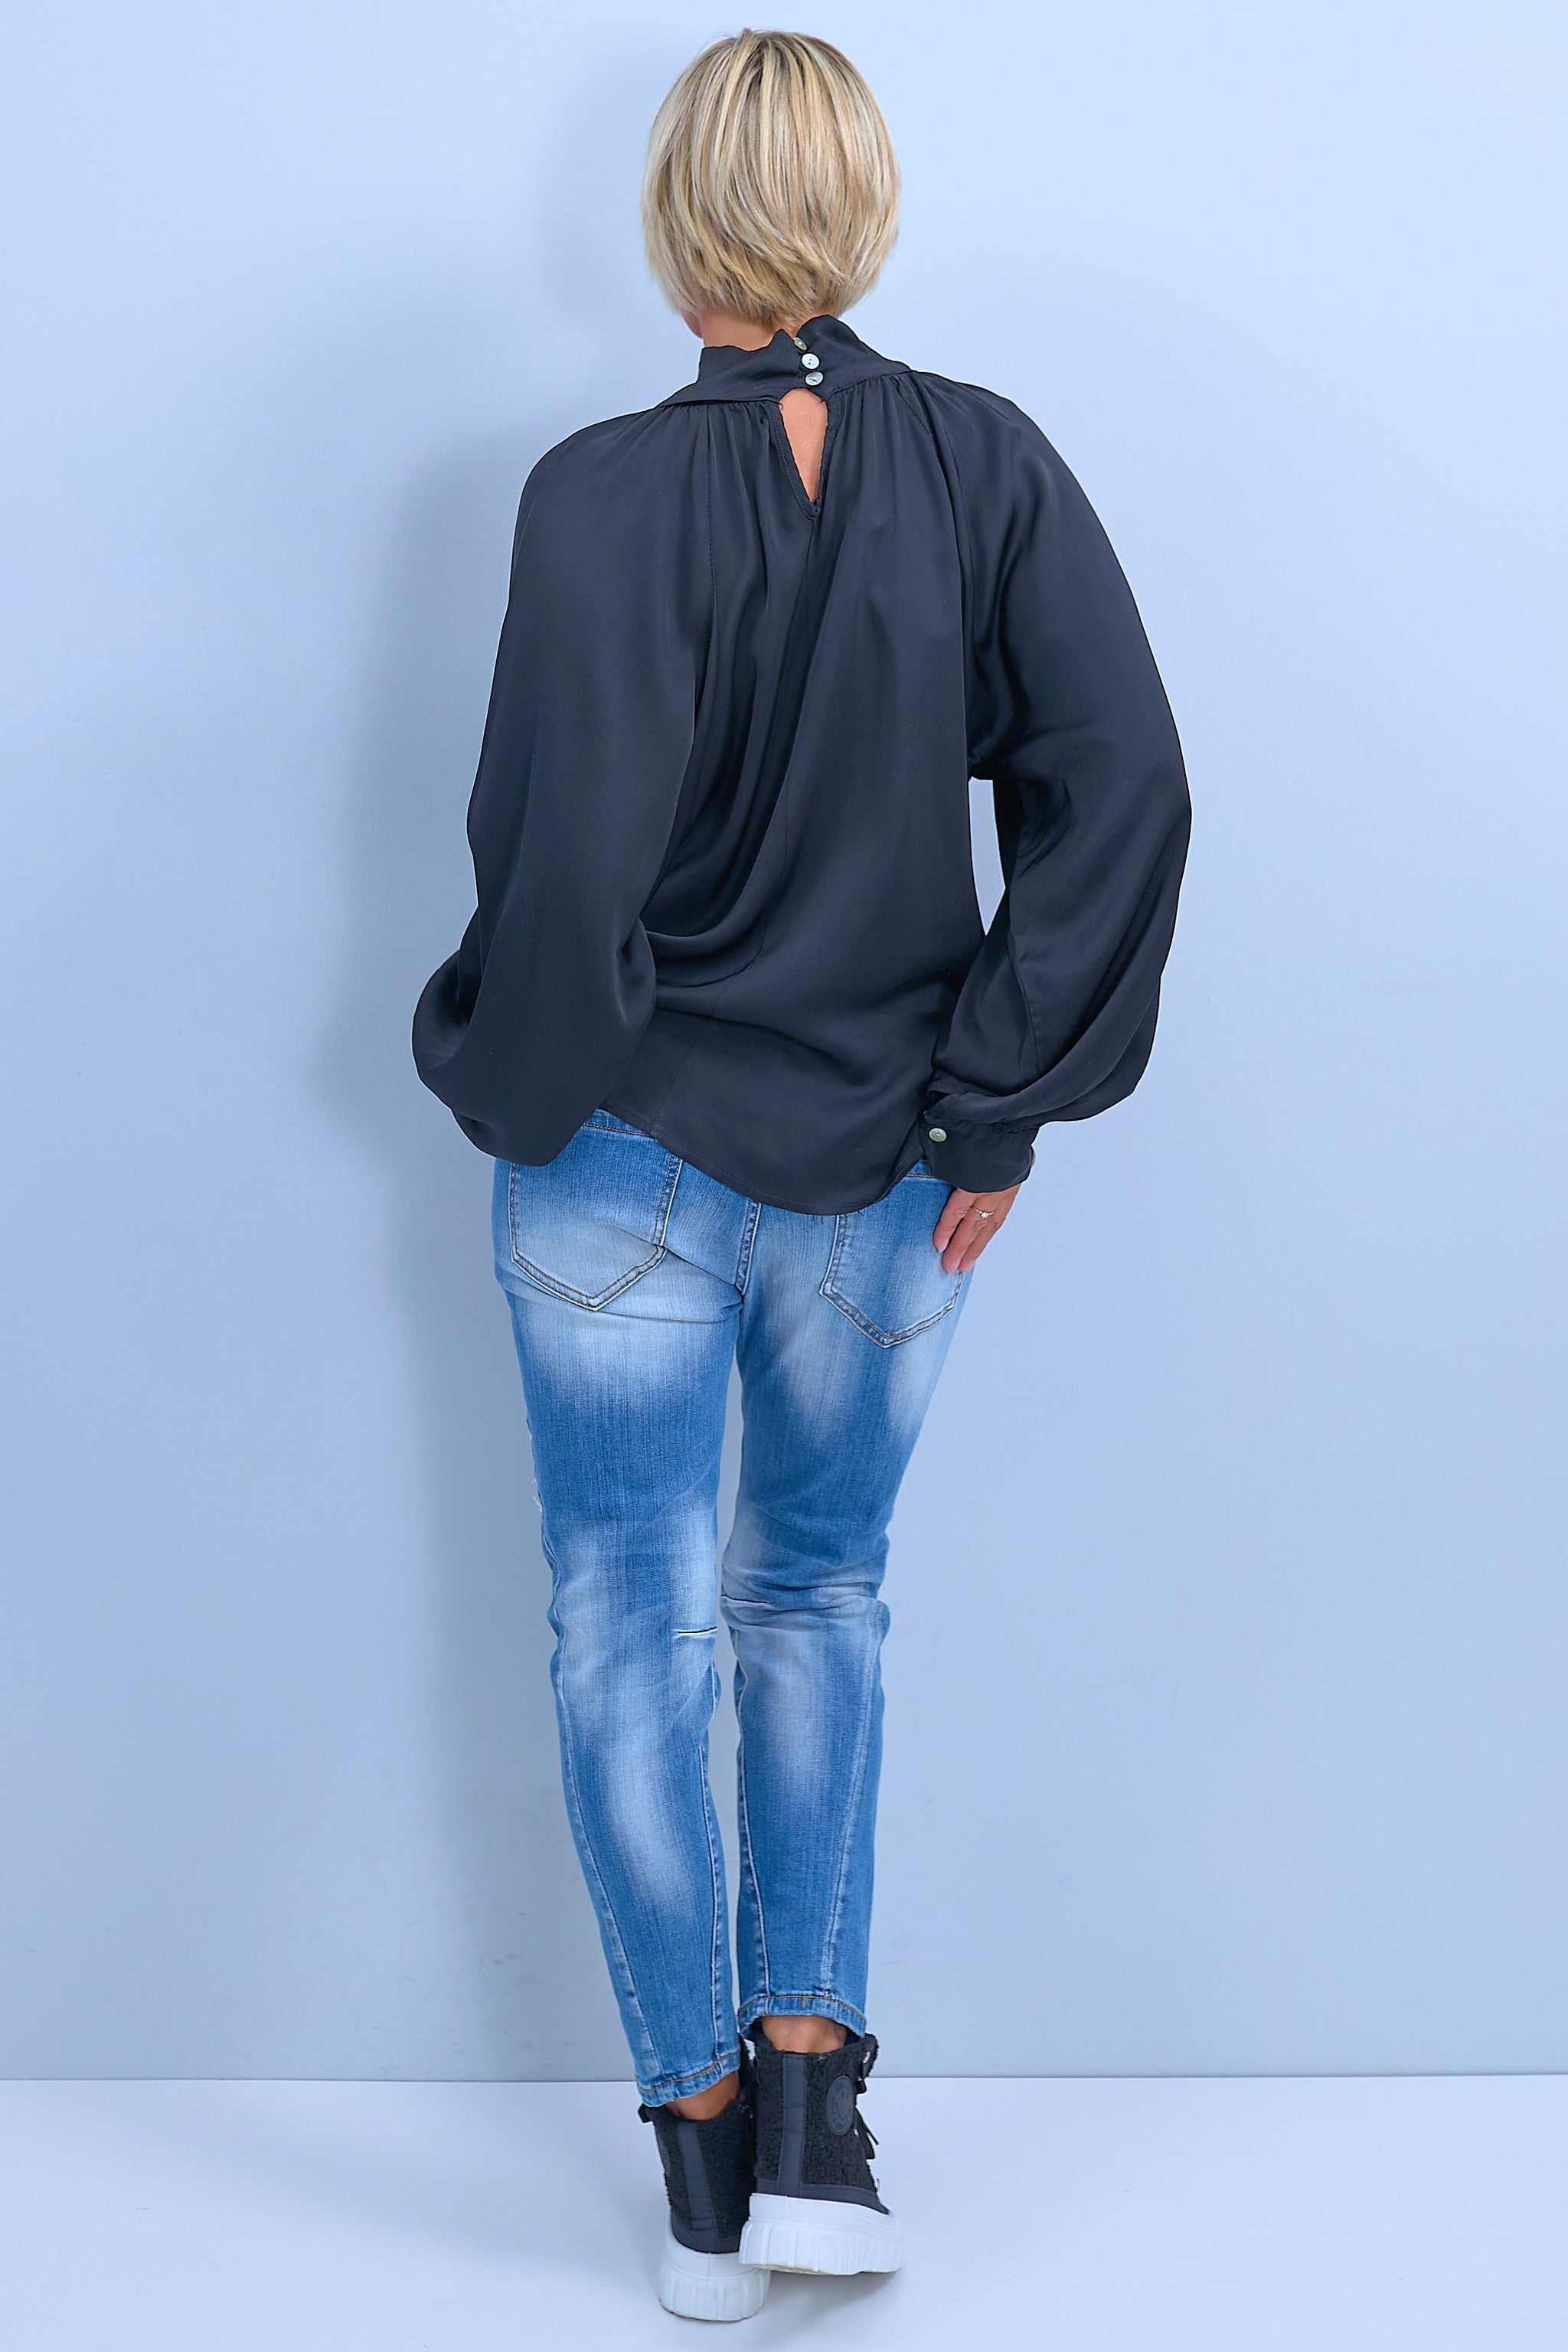 Jeans mit schwarz-silbernen Patches, denim blue